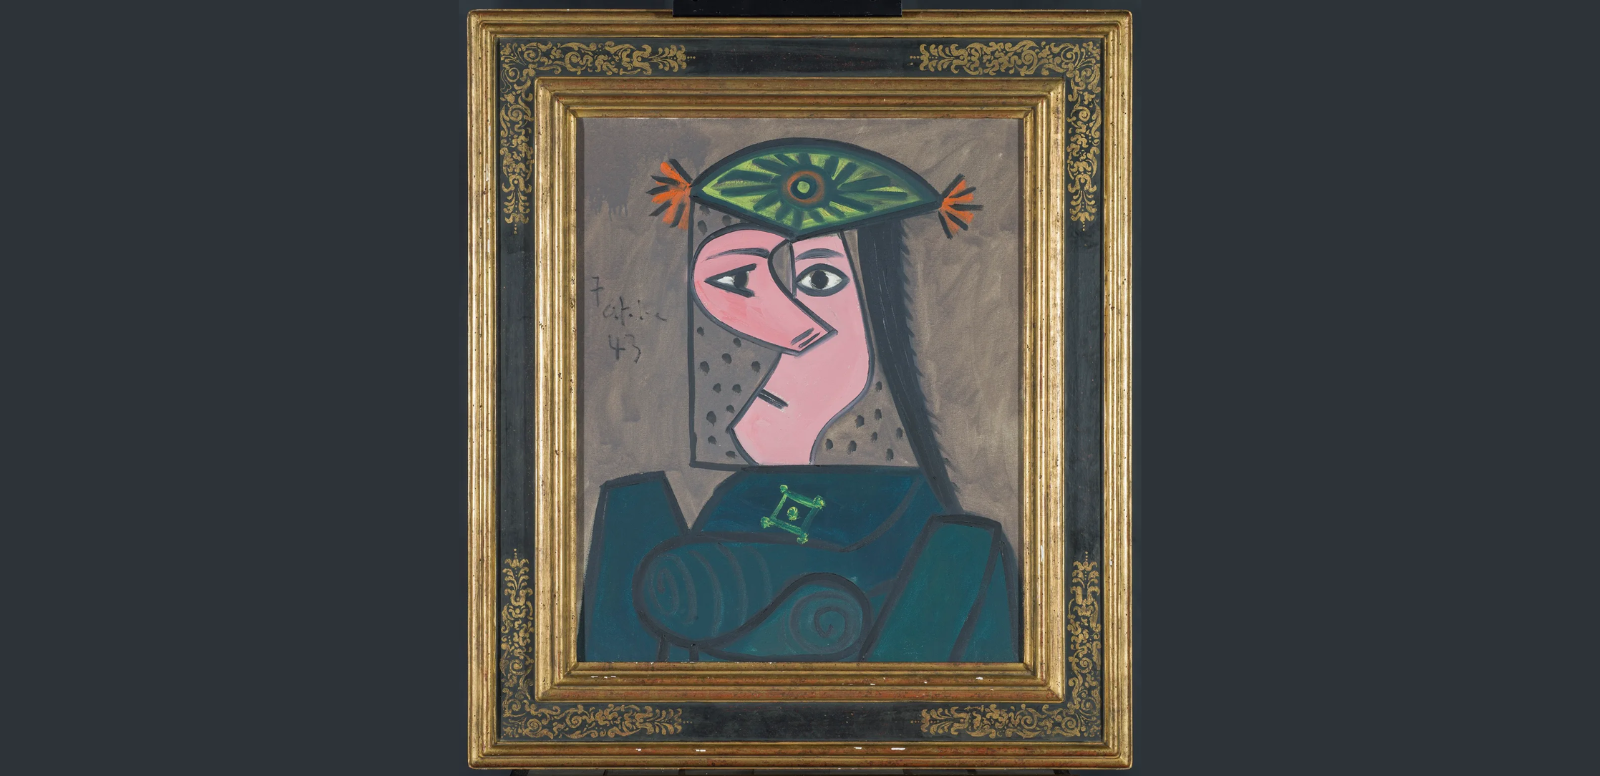 Pablo Picasso, "Buste de femme 43", 1943